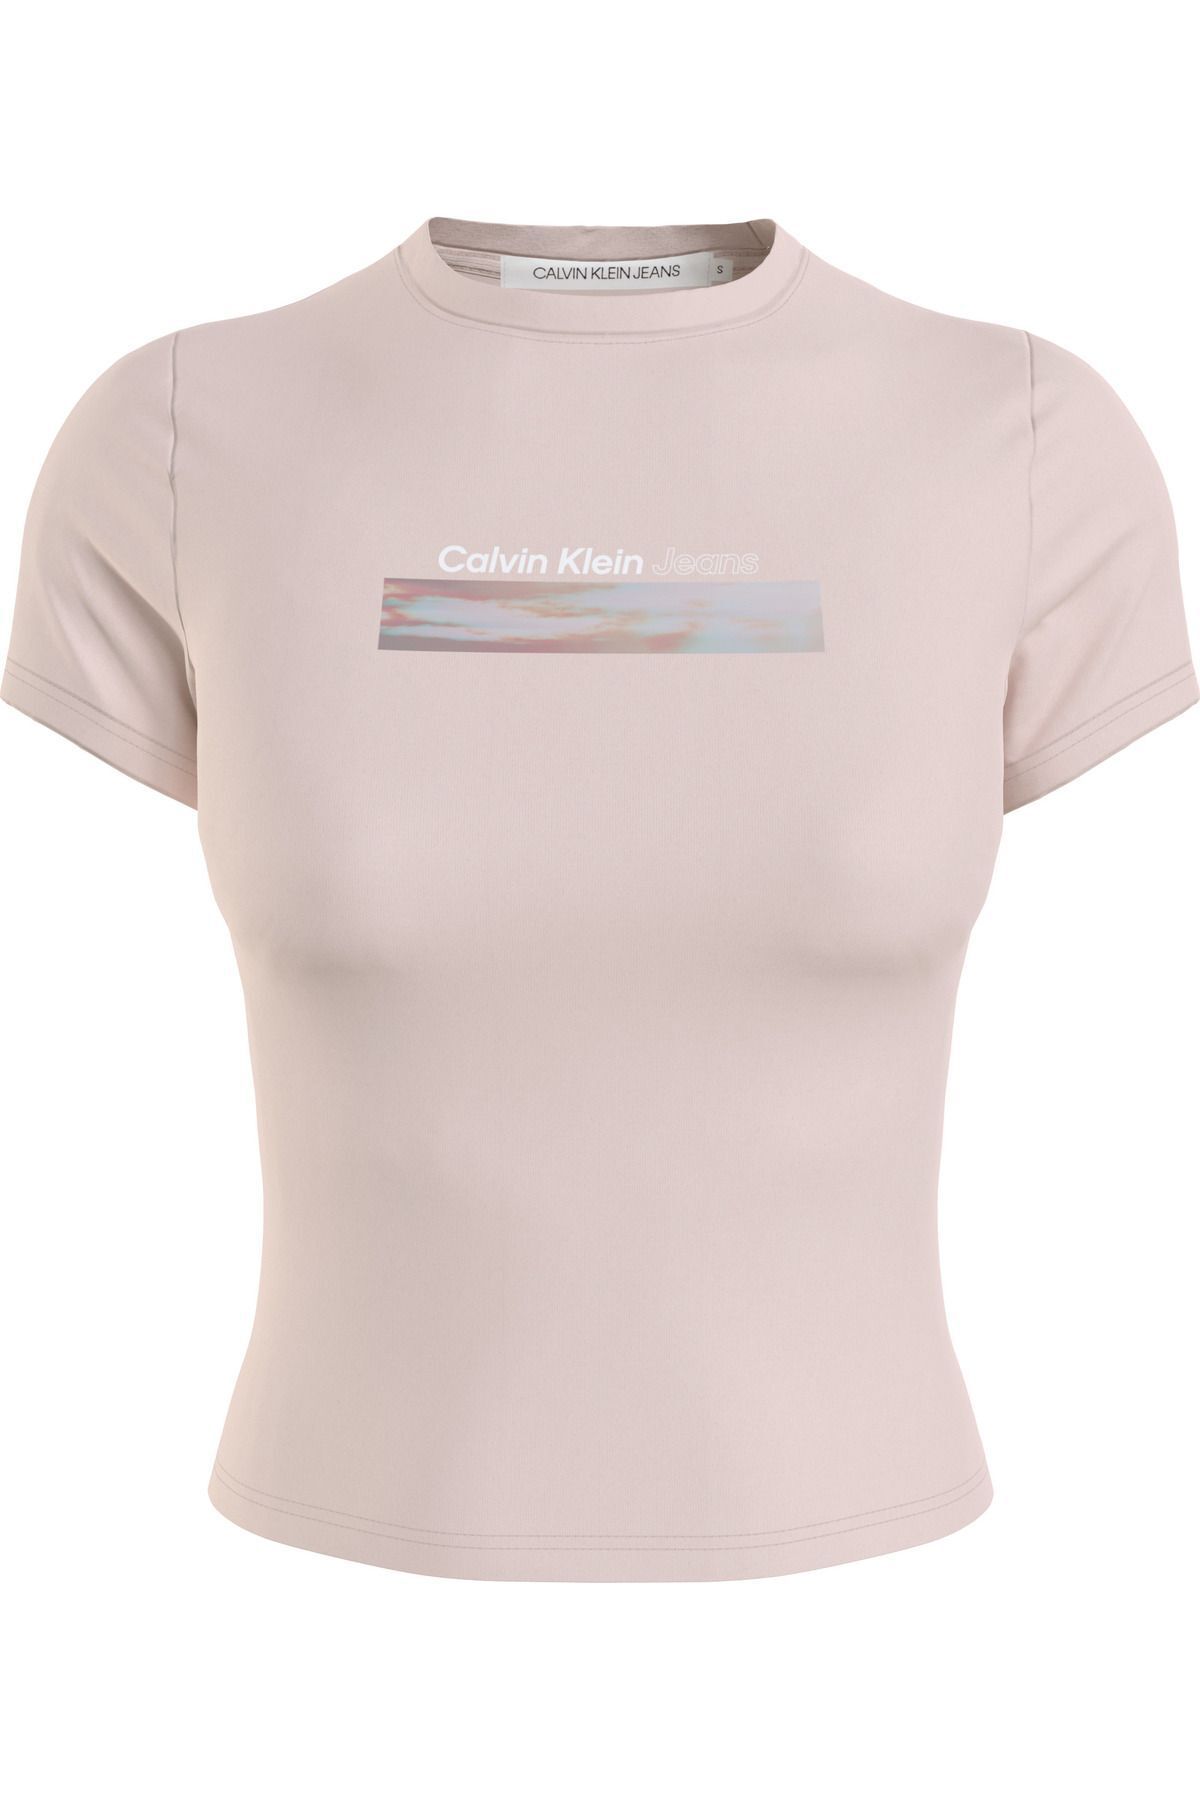 Calvin Klein Kadın Marka Logolu Pamuklu Bisiklet Yakalı Dar Kesimli Crop Günlük Kullanıma Uygun Pembe T-Shirt J20